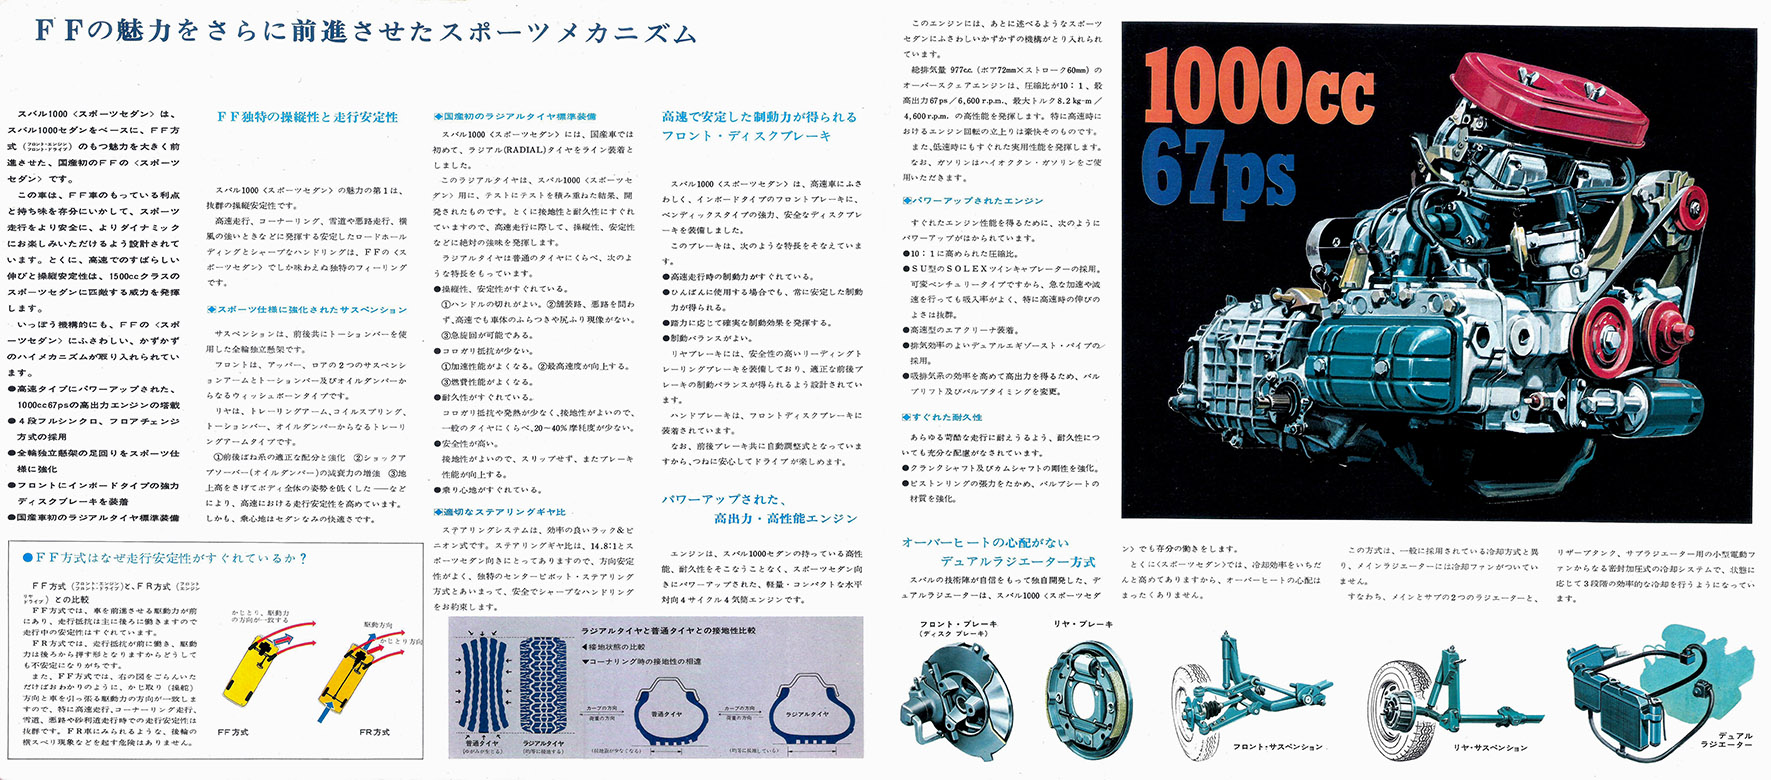 昭和43年2月発行 スバル1000スポーツセダン カタログ(11)